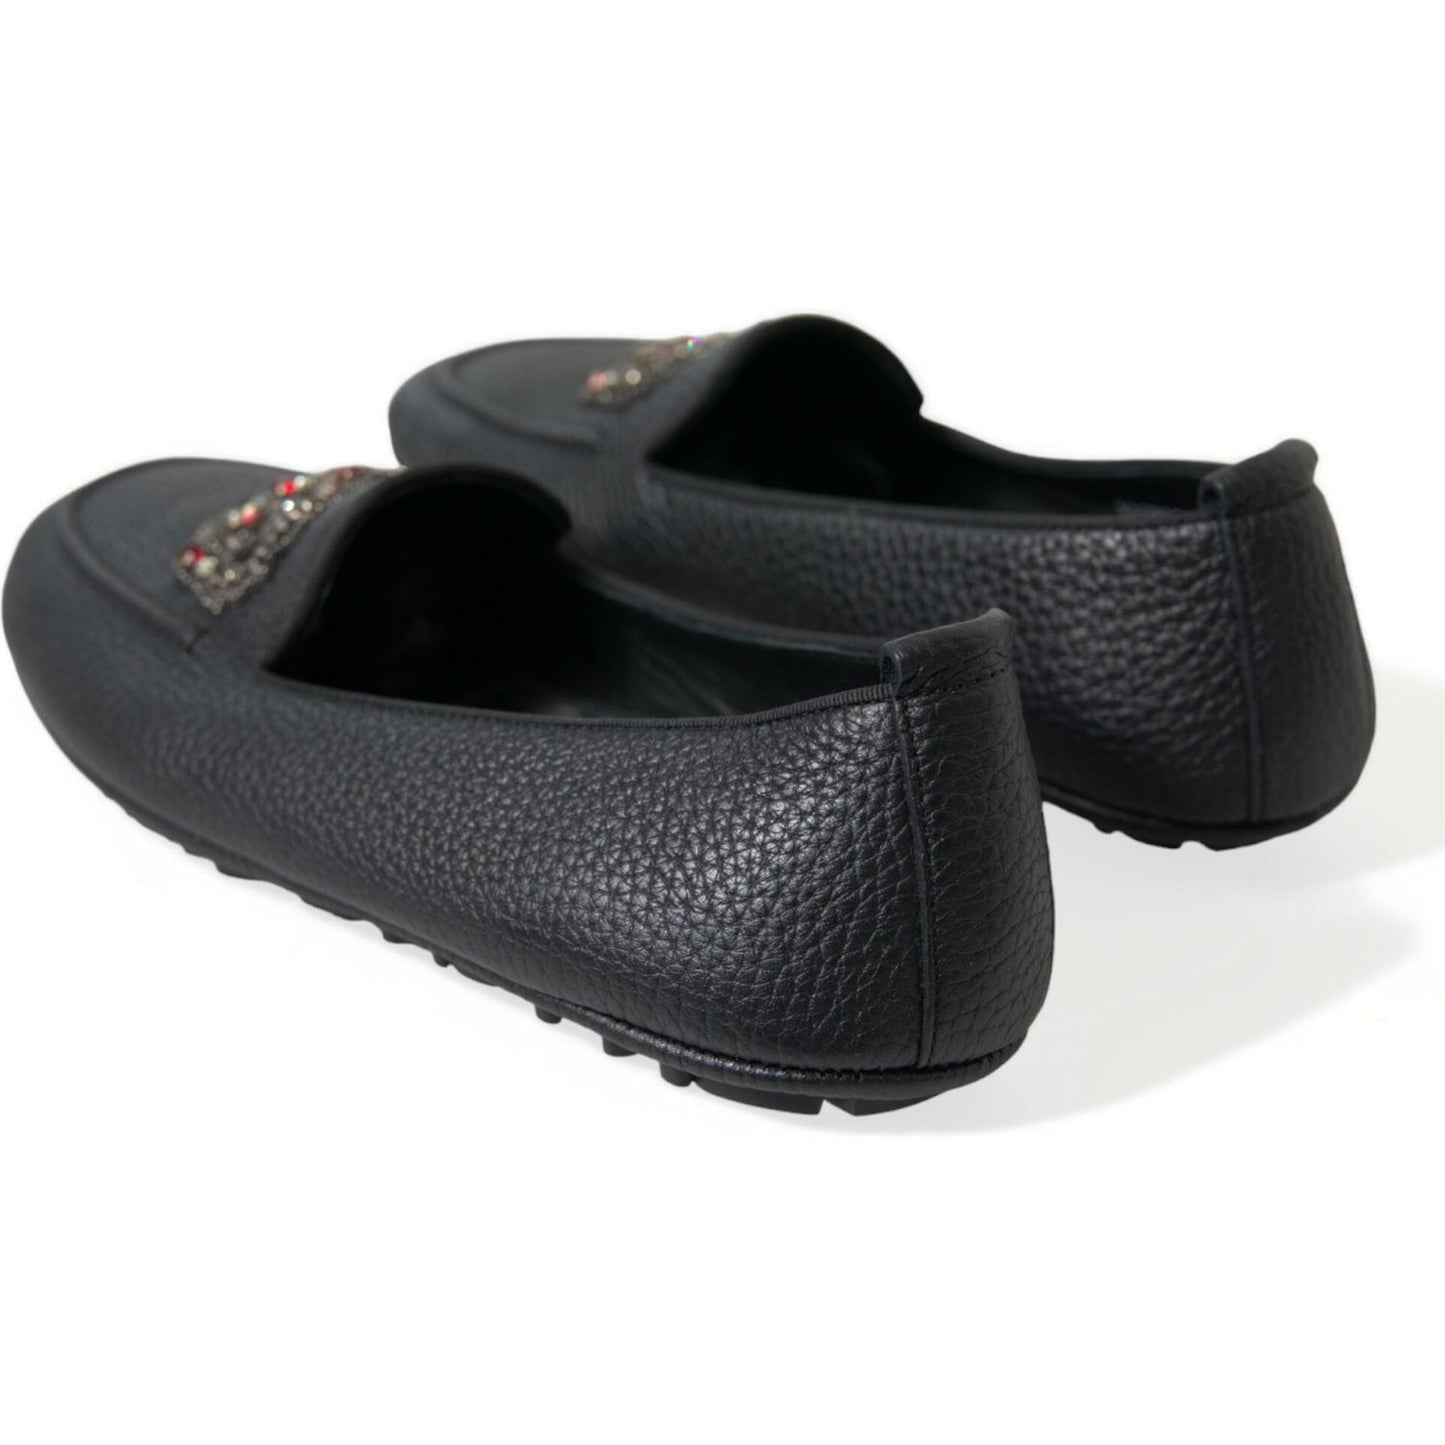 Dolce & Gabbana Dazzling Crystal-Embellished Loafers black-leather-crystal-embellished-loafers-dress-shoes